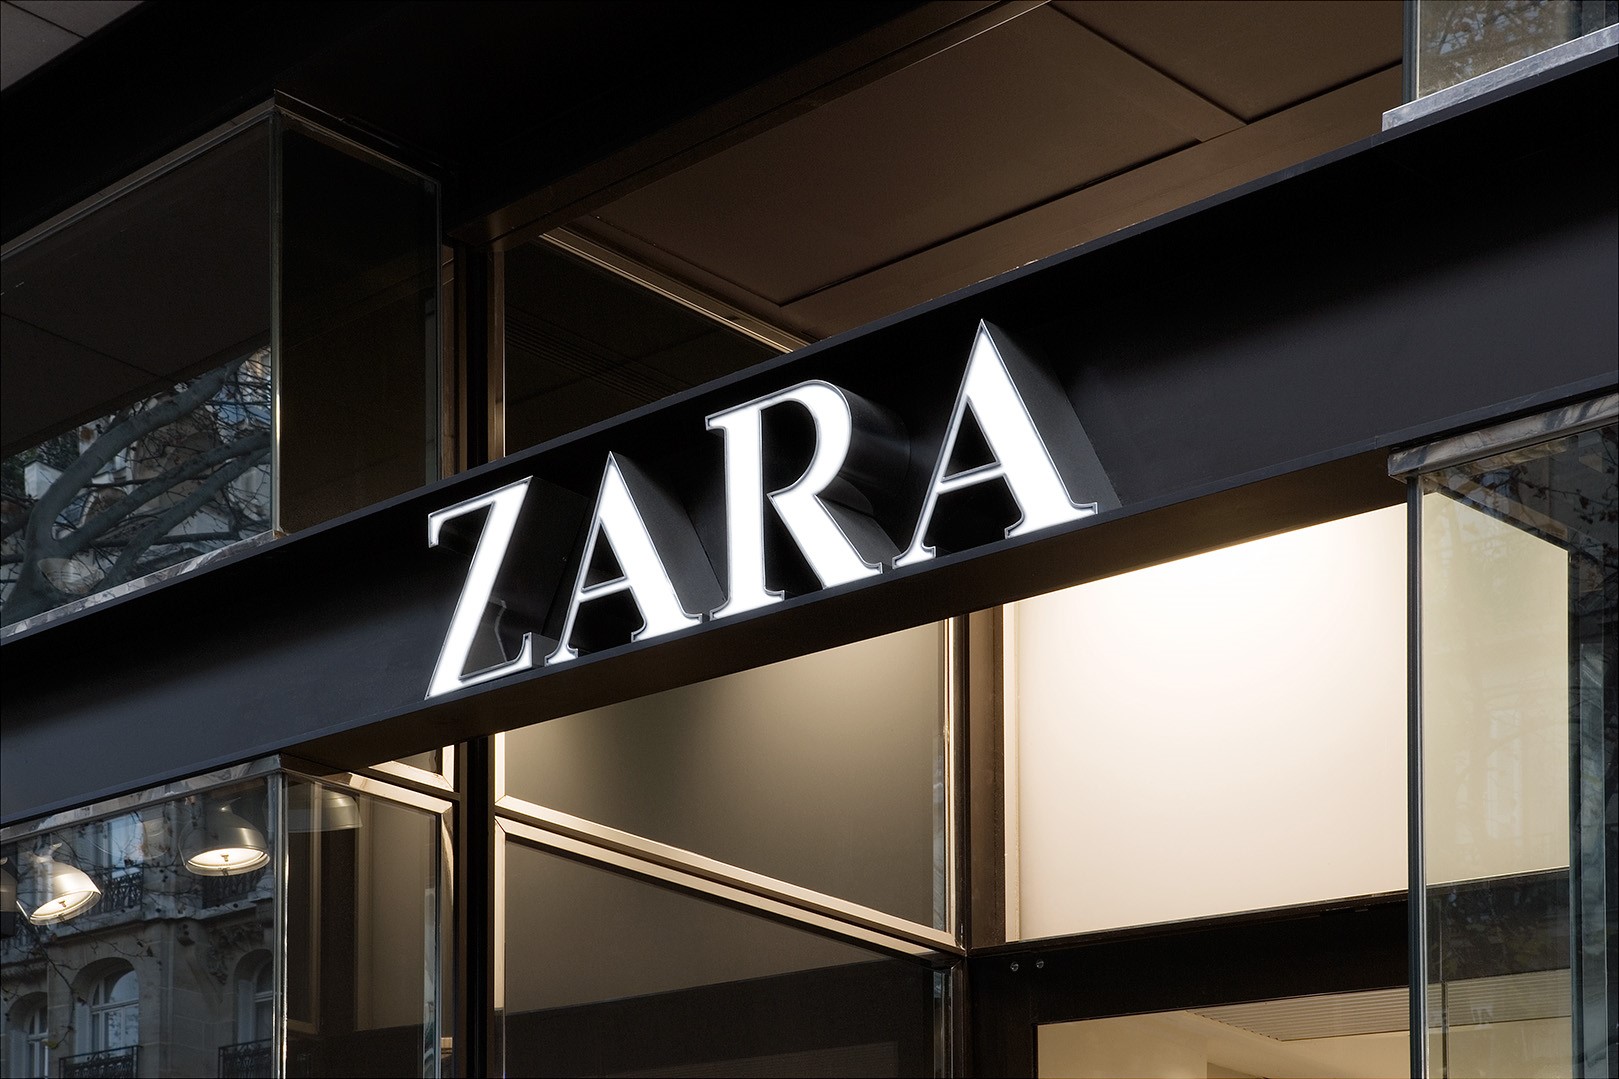 Τα Zara φτιάχνουν στα Σπάτα το μεγαλύτερο κατάστημά της στην Ελλάδα